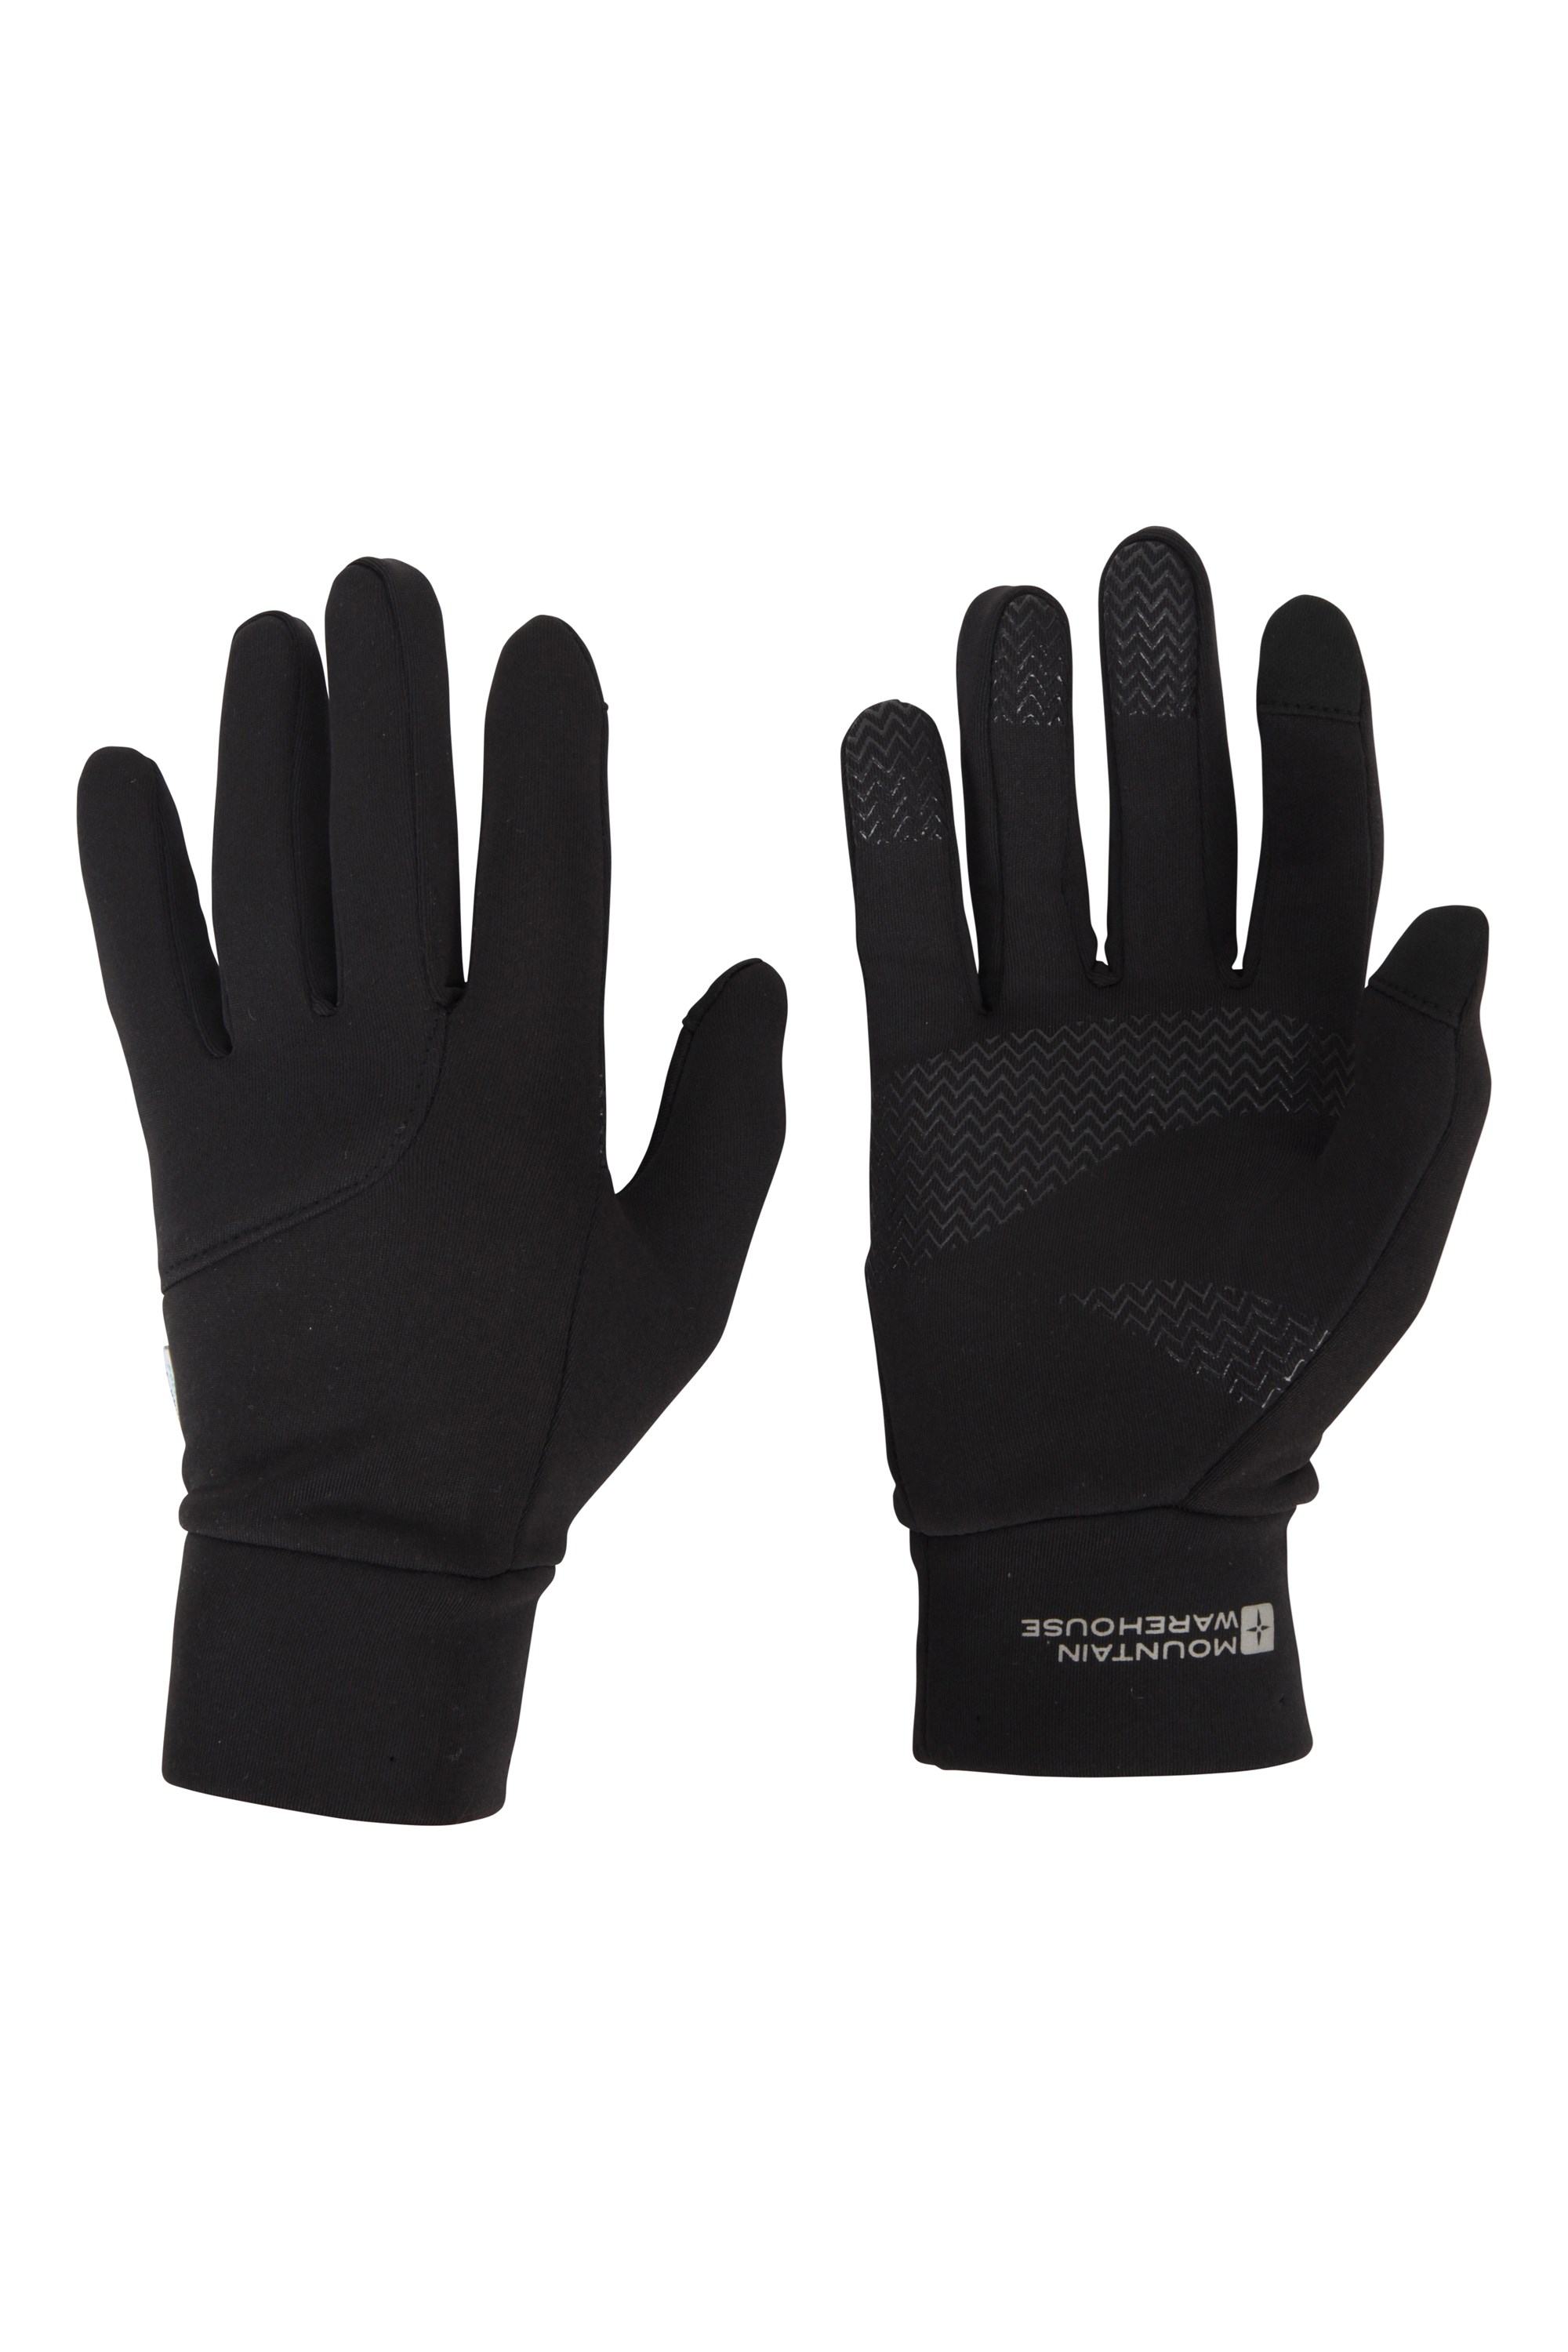 Vertex męskie rękawice poligraficzne z obsługą ekranów dotykowych - Black